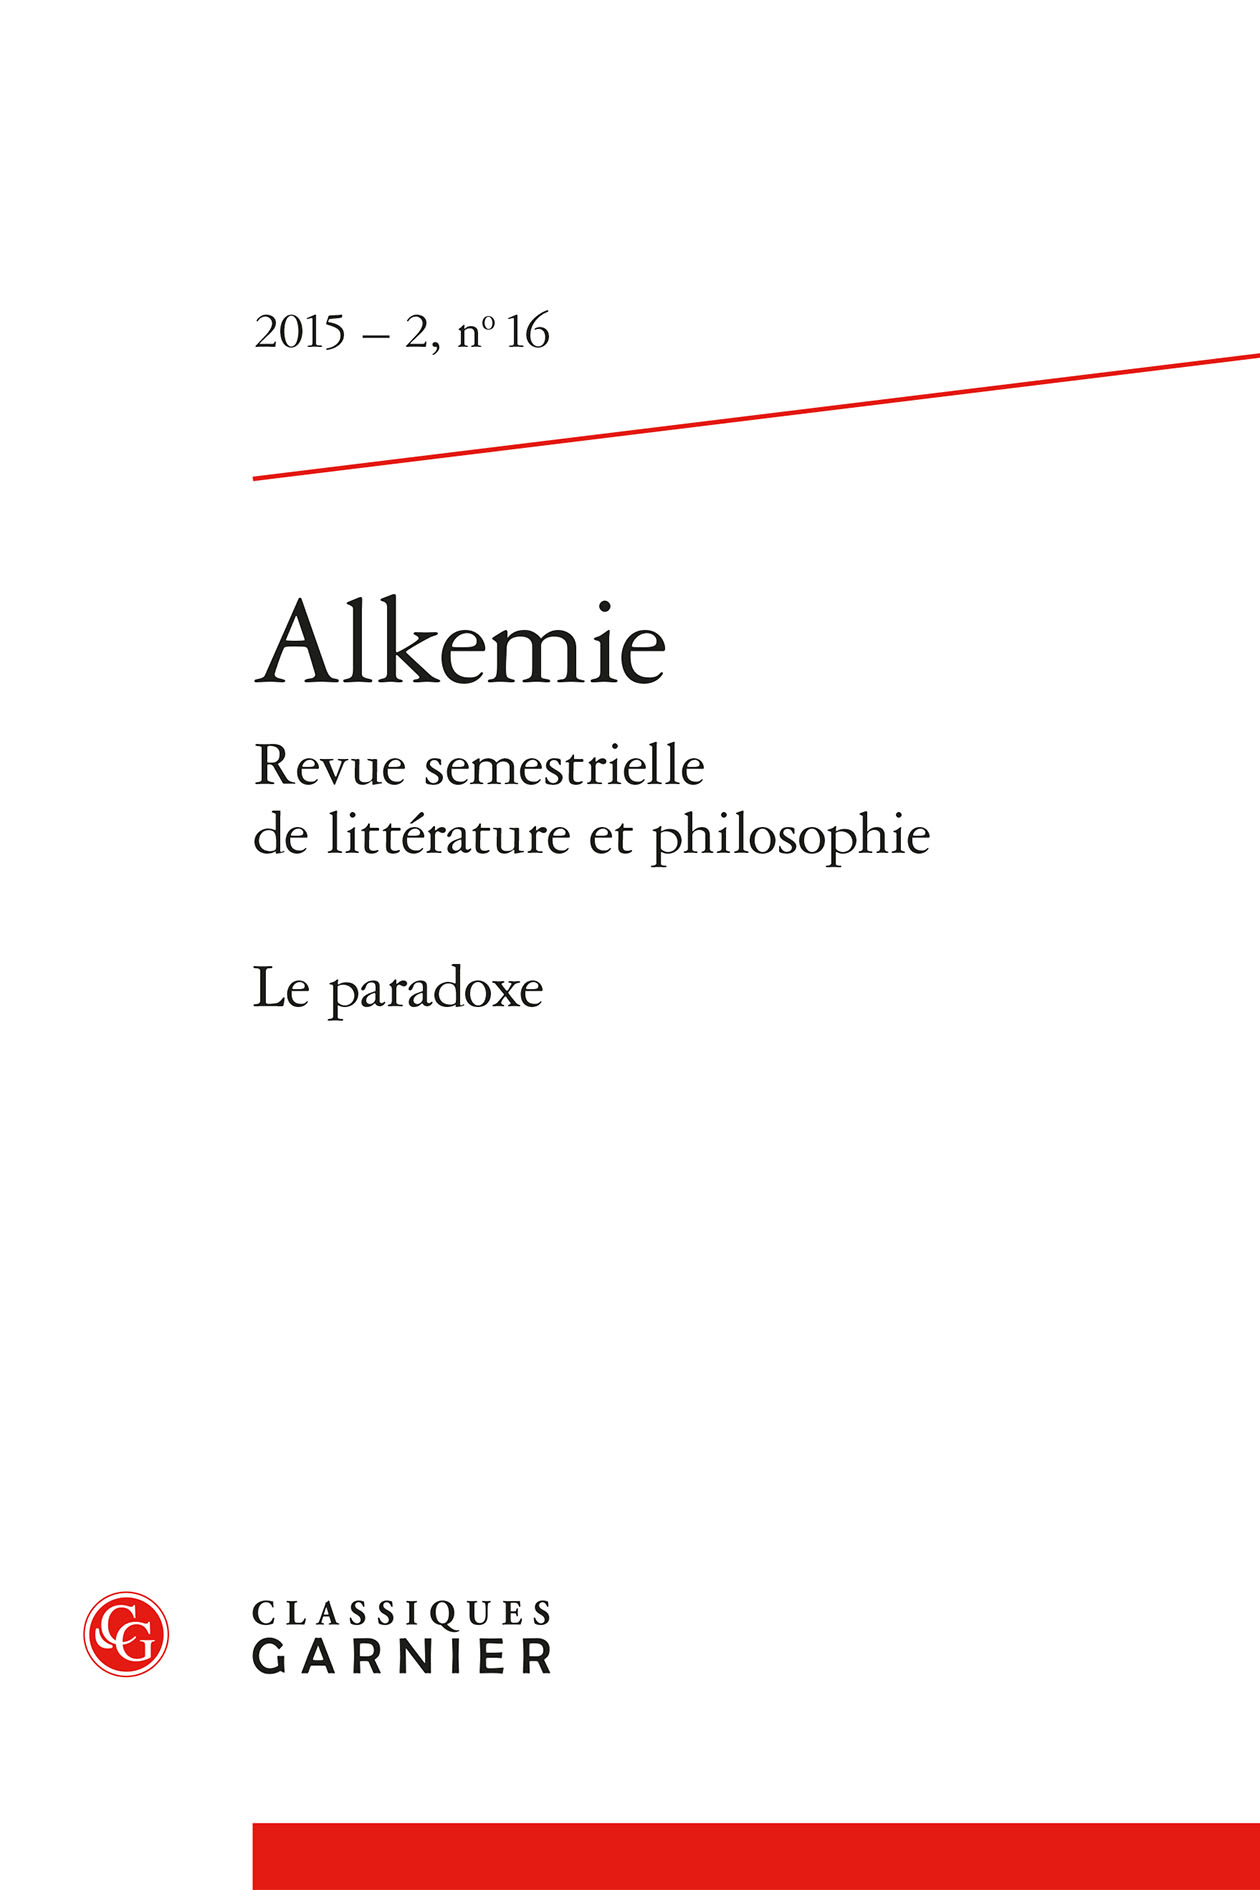 Michel Lambert, Quand nous reverrons-nous ?, Paris, Pierre-Guillaume de Roux, 2015. Cover Image